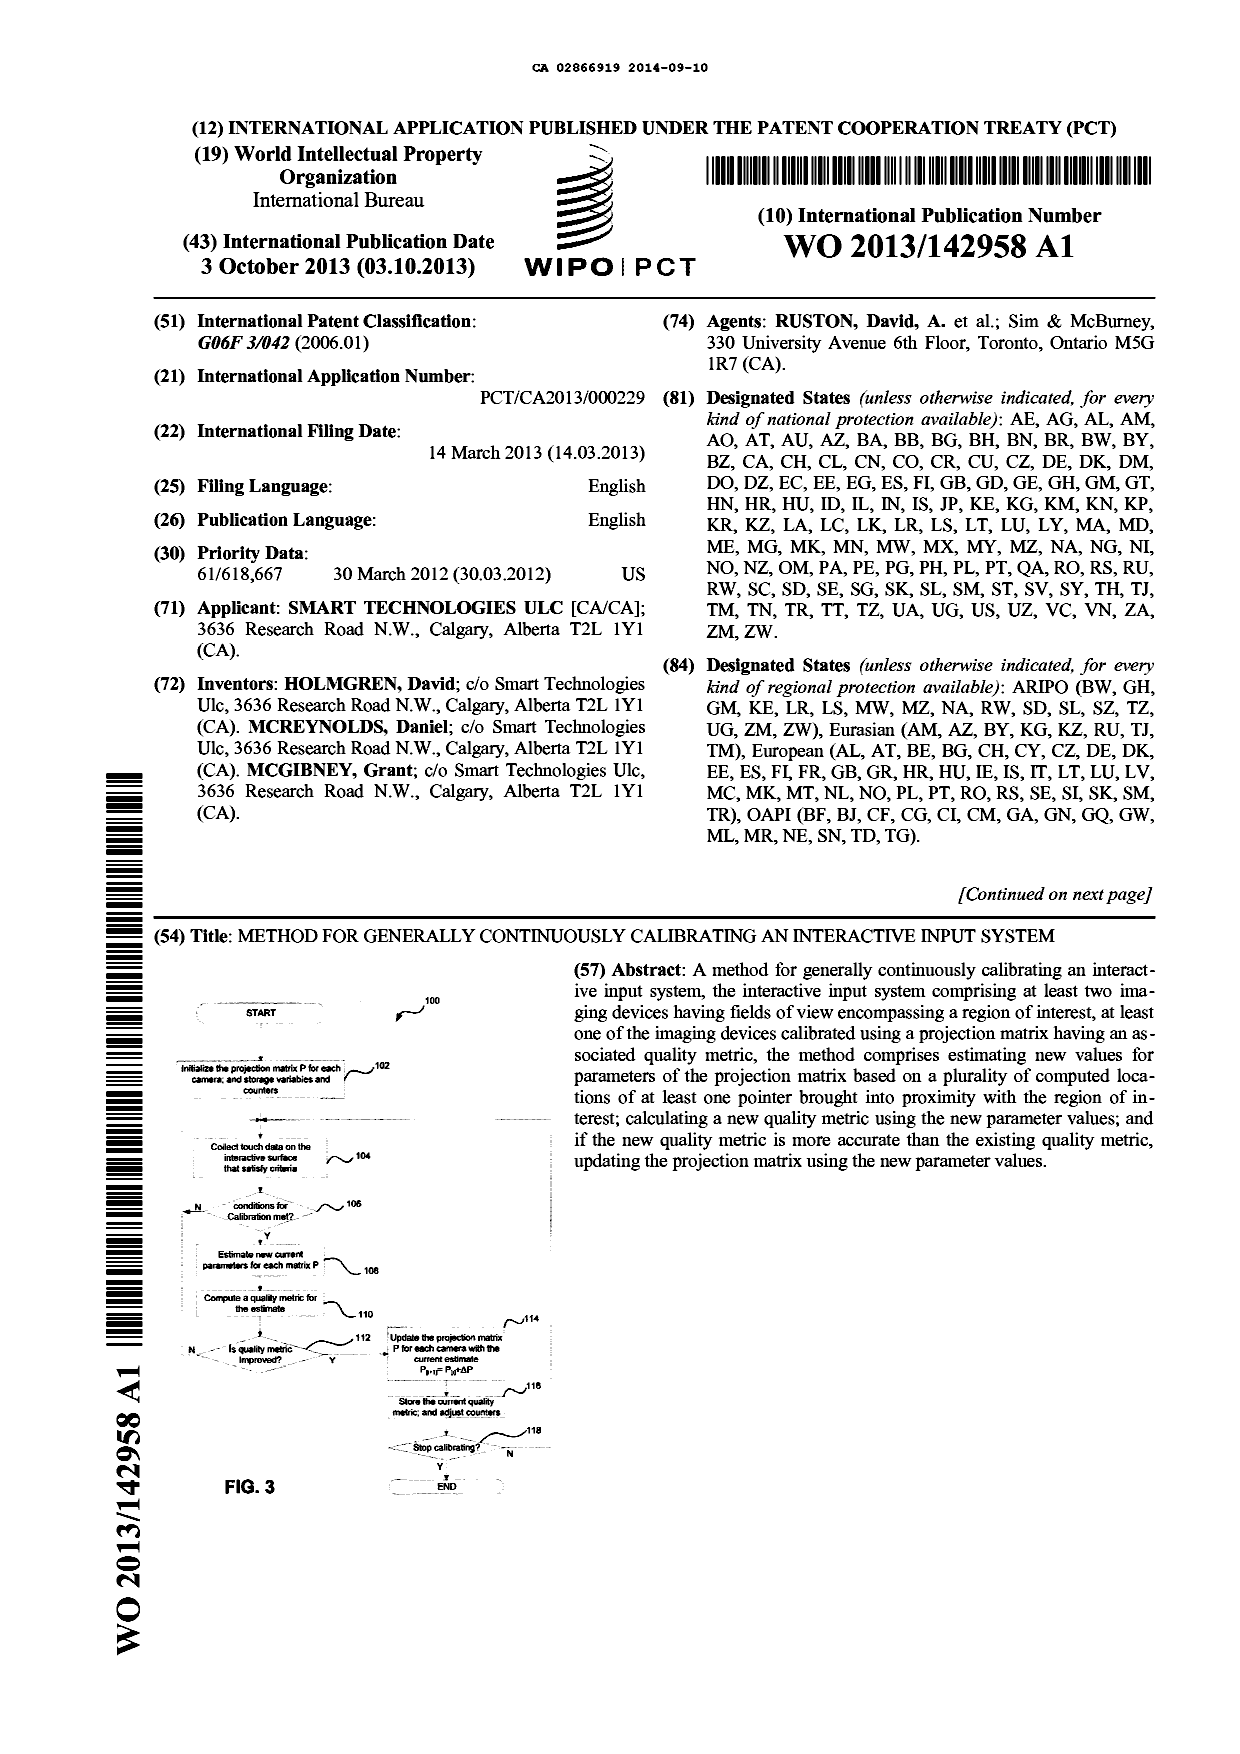 Document de brevet canadien 2866919. Abrégé 20140910. Image 1 de 2